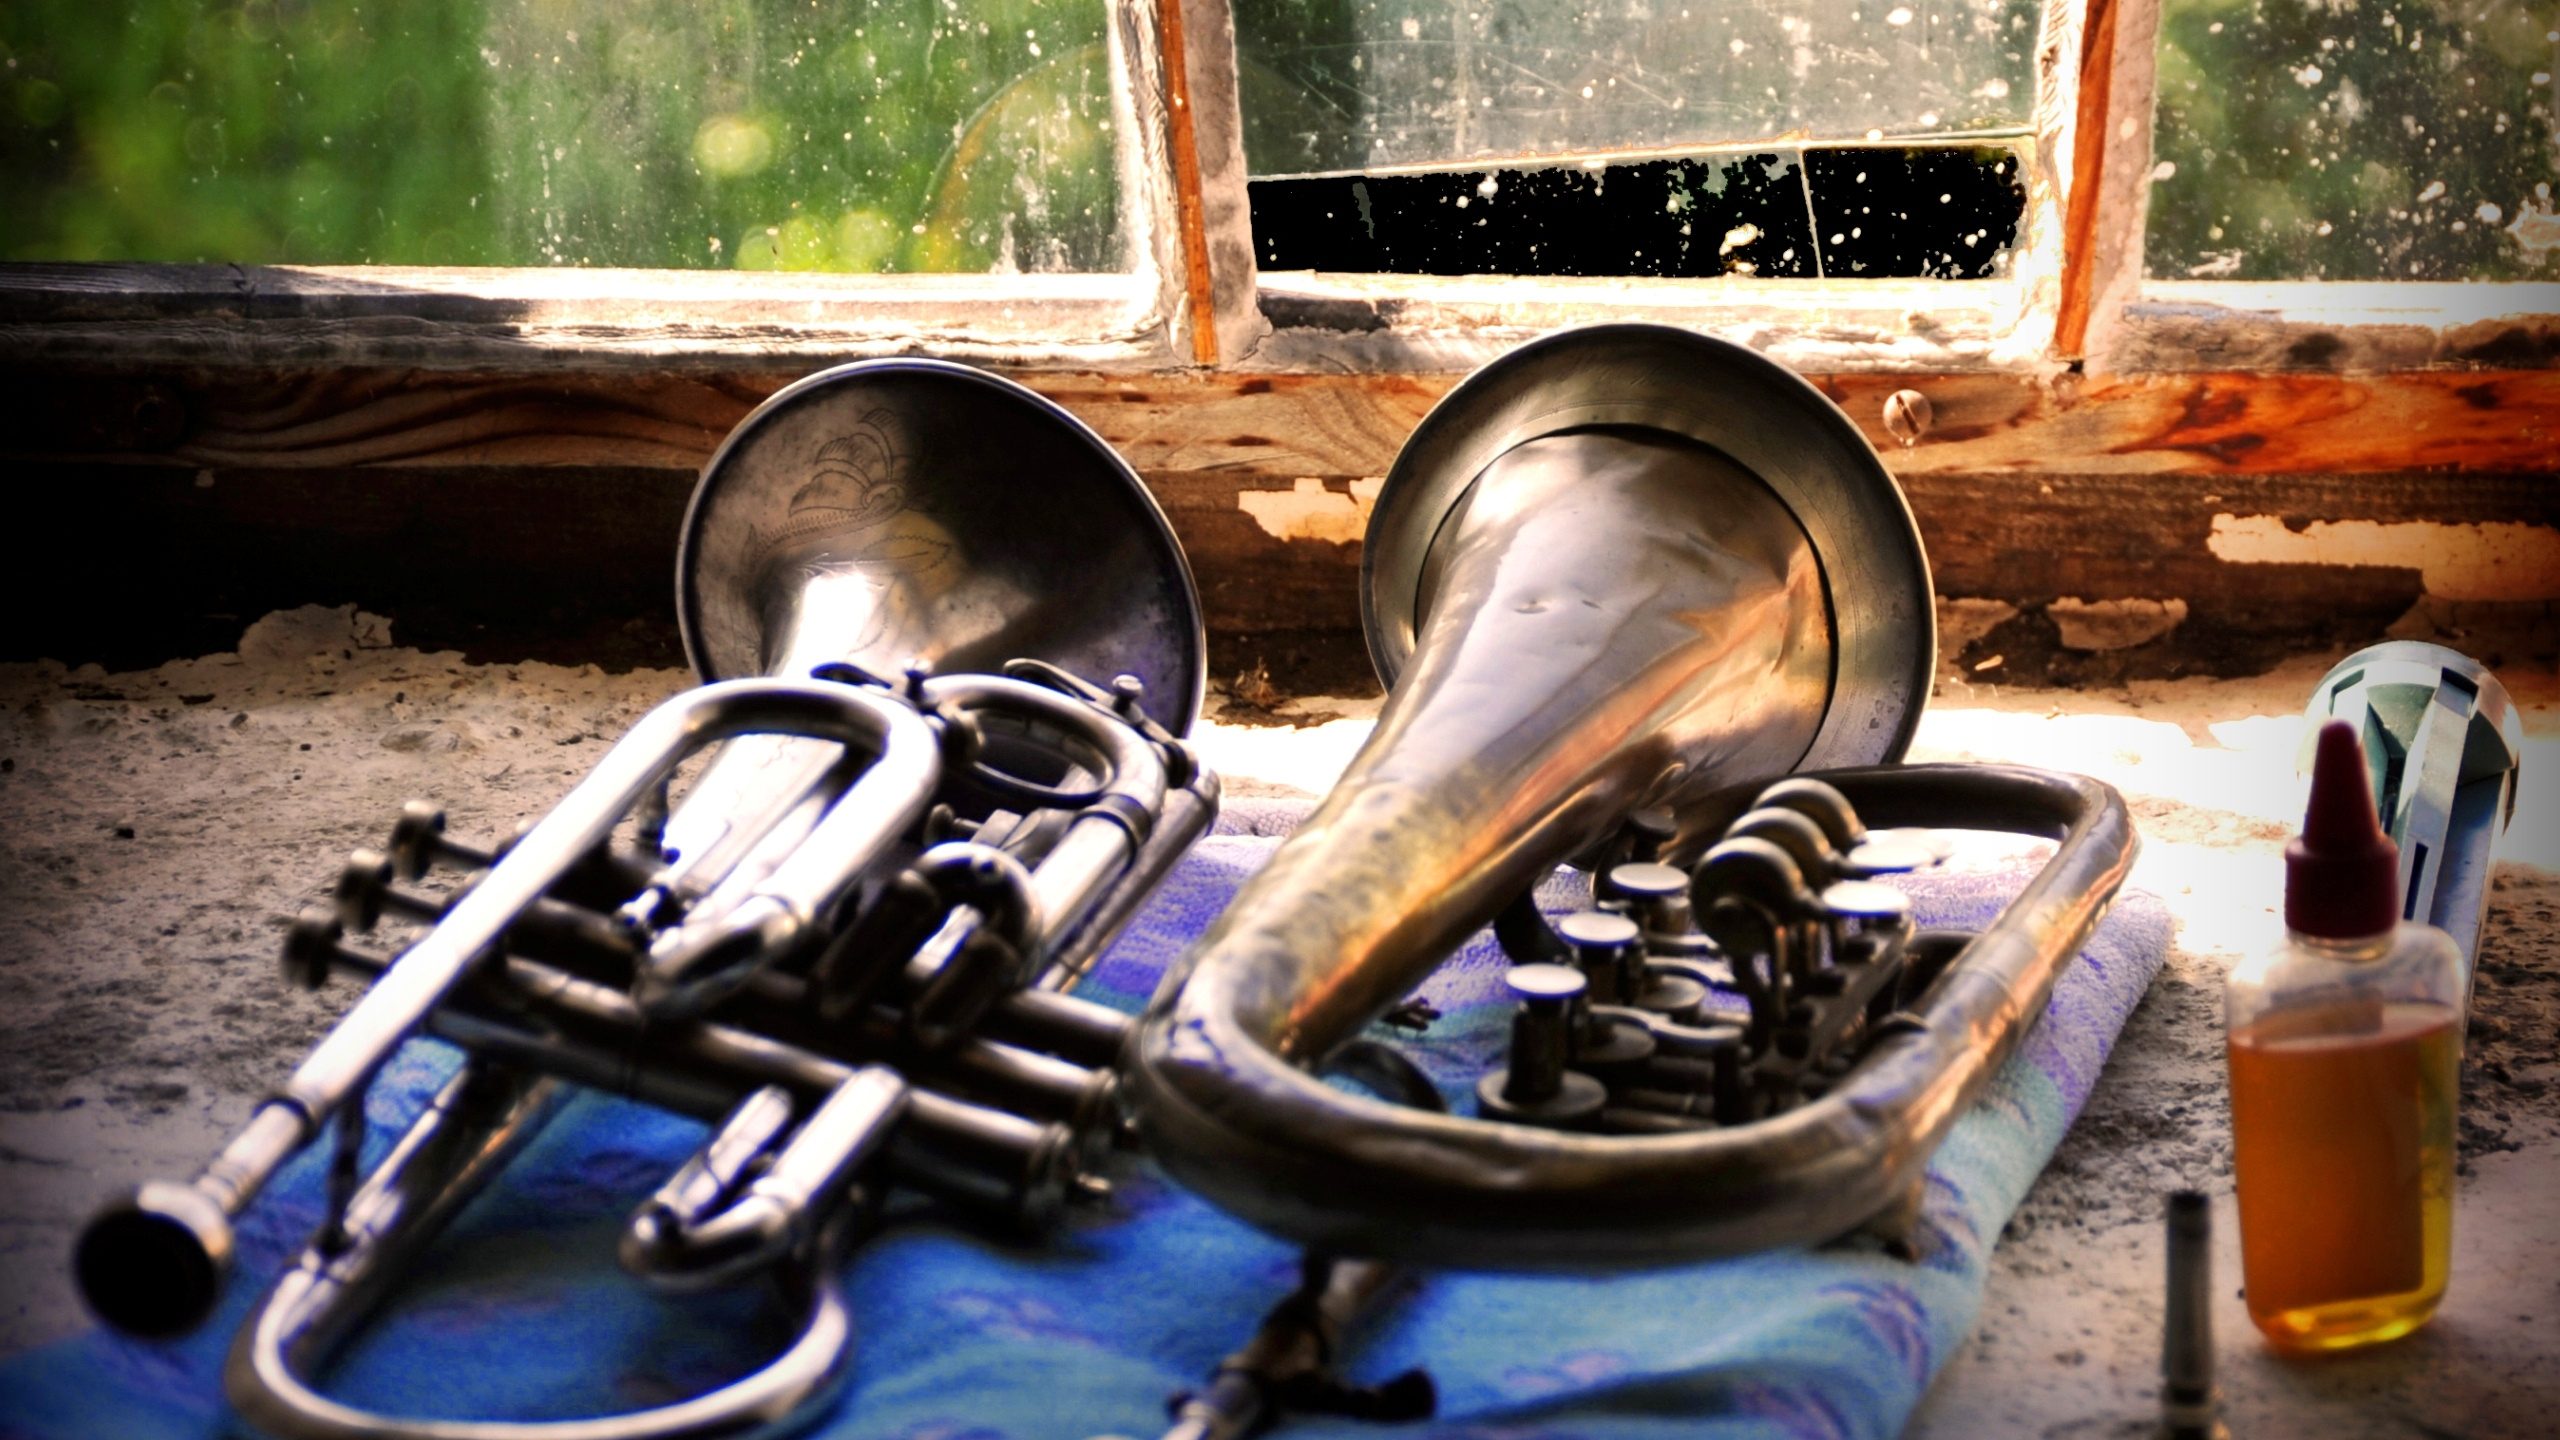 Bombardino, Trompeta, Instrumento de Viento de Metal, Melófono, Instrumento de Viento. Wallpaper in 2560x1440 Resolution